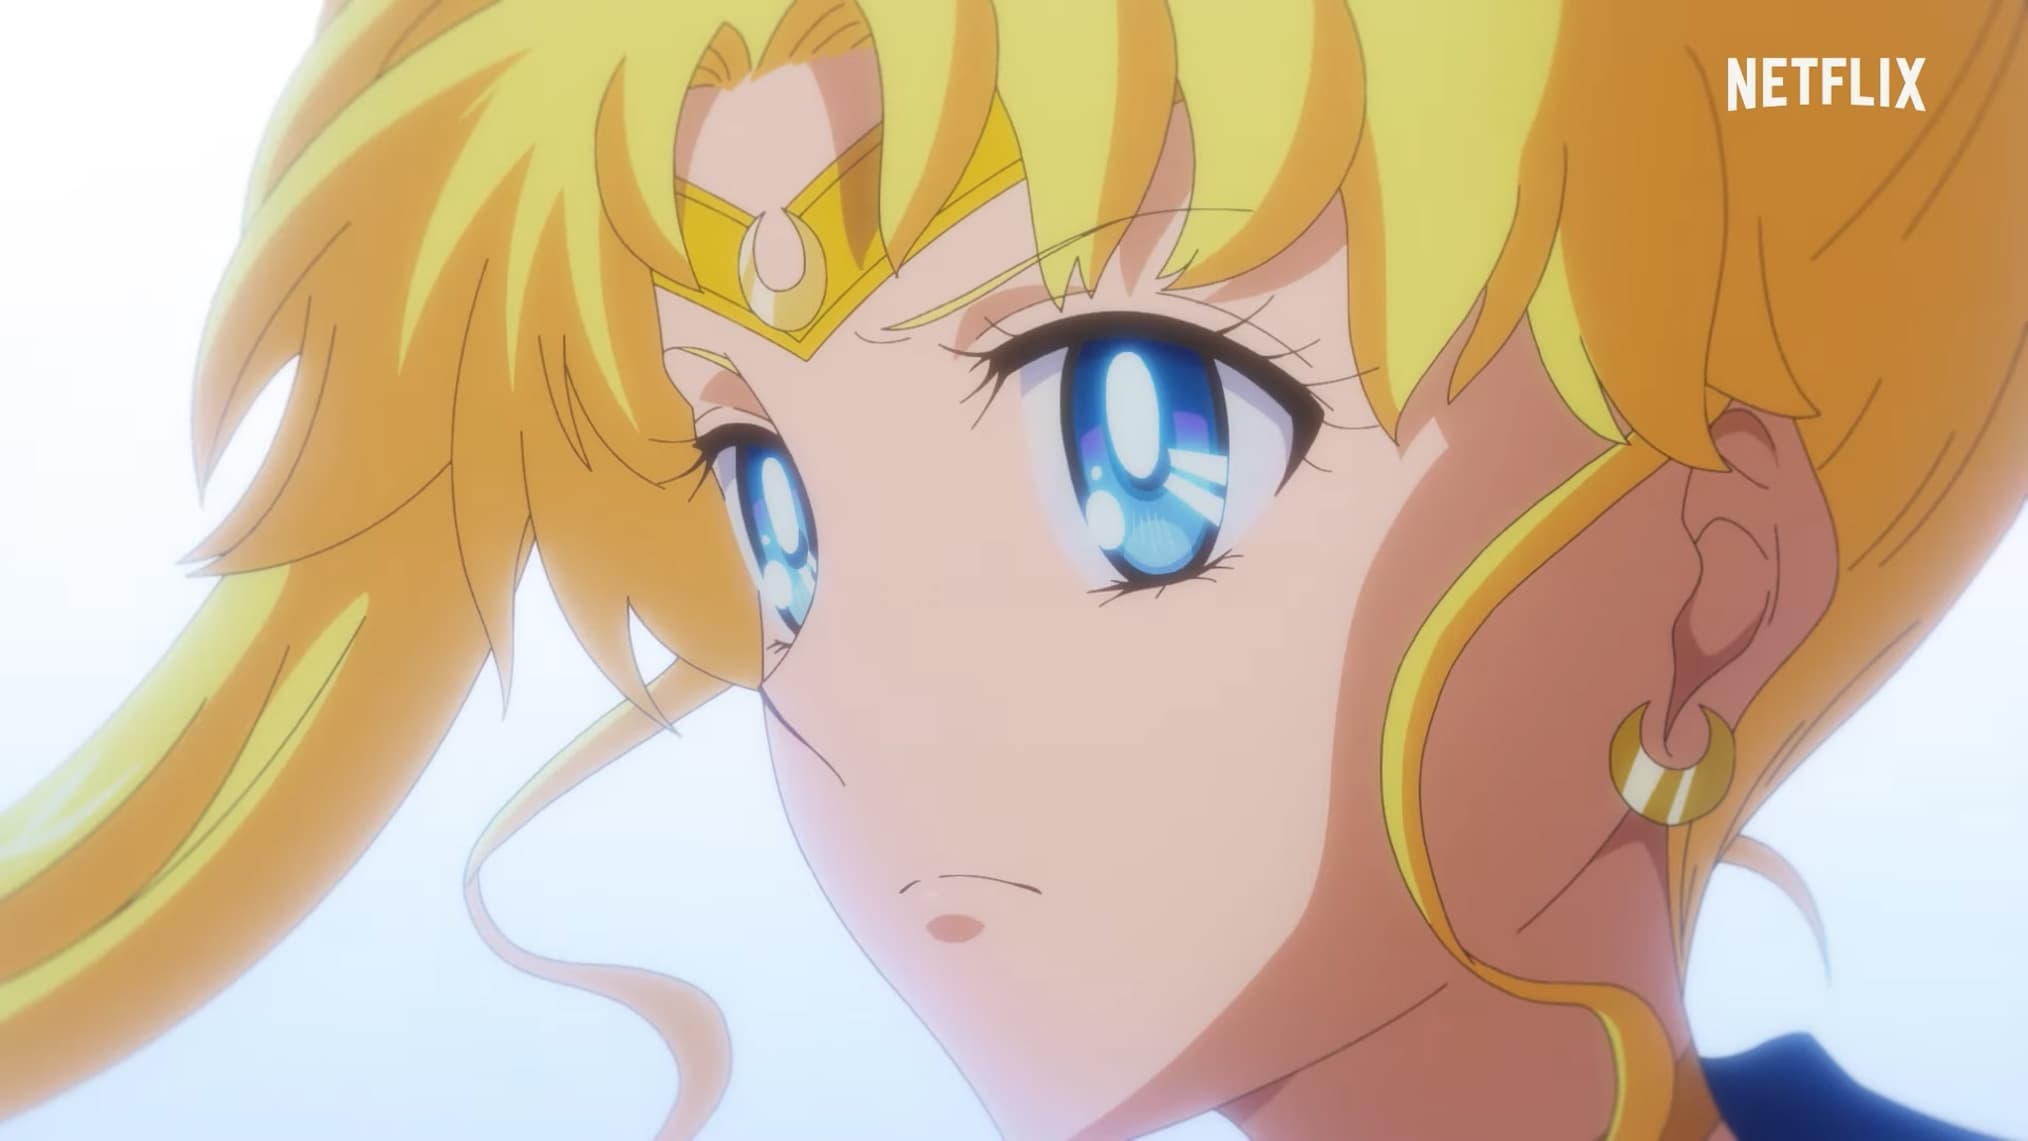 Sailor Moon Eternal debuts on international Netflix 3 June 2021